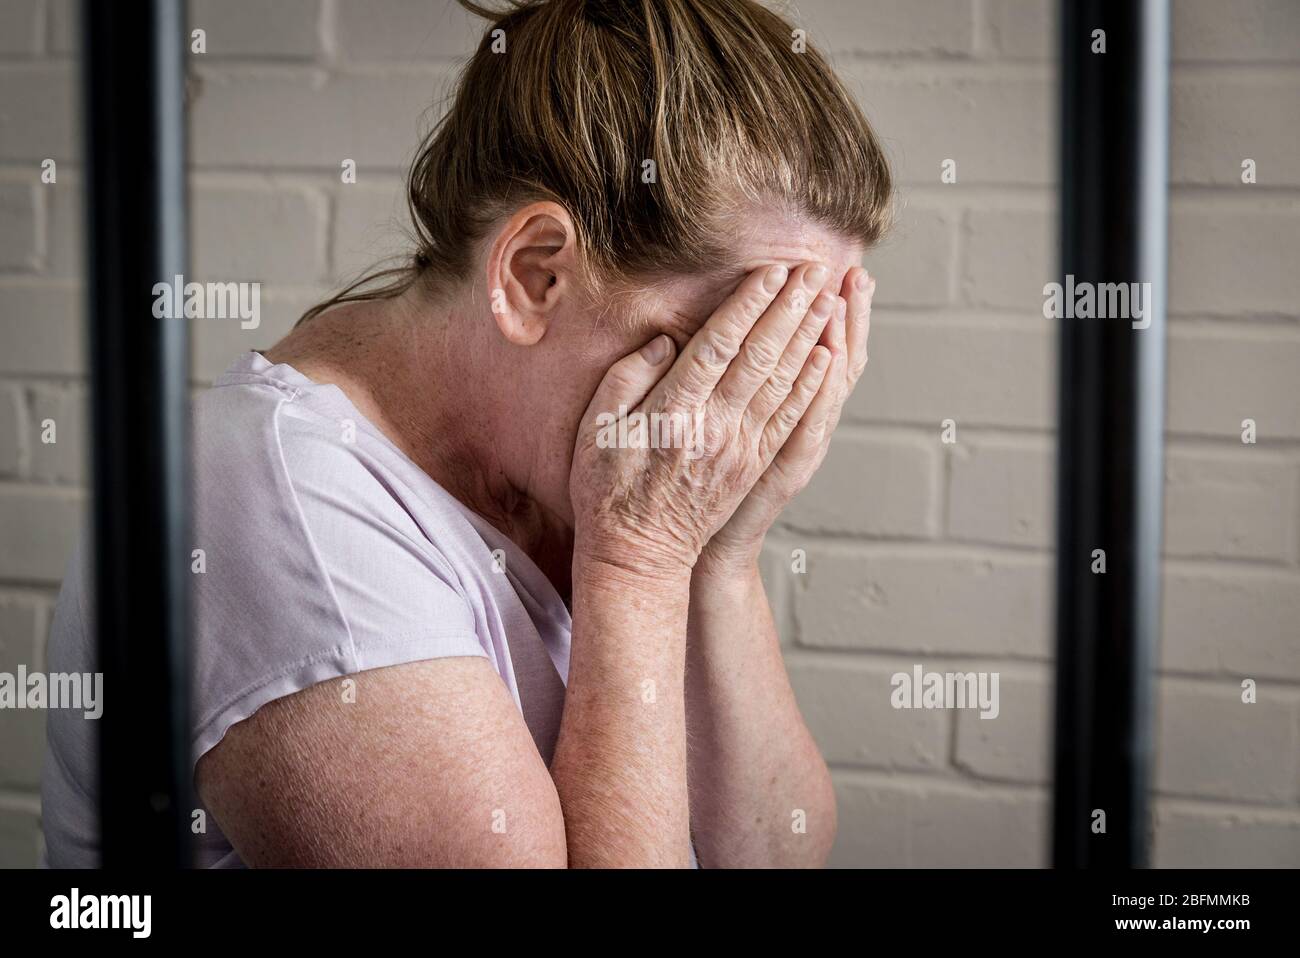 Una triste prigioniera femmina sconvolsa dietro le sbarre in una prigione femminile. Immagine posta dal modello. Foto Stock